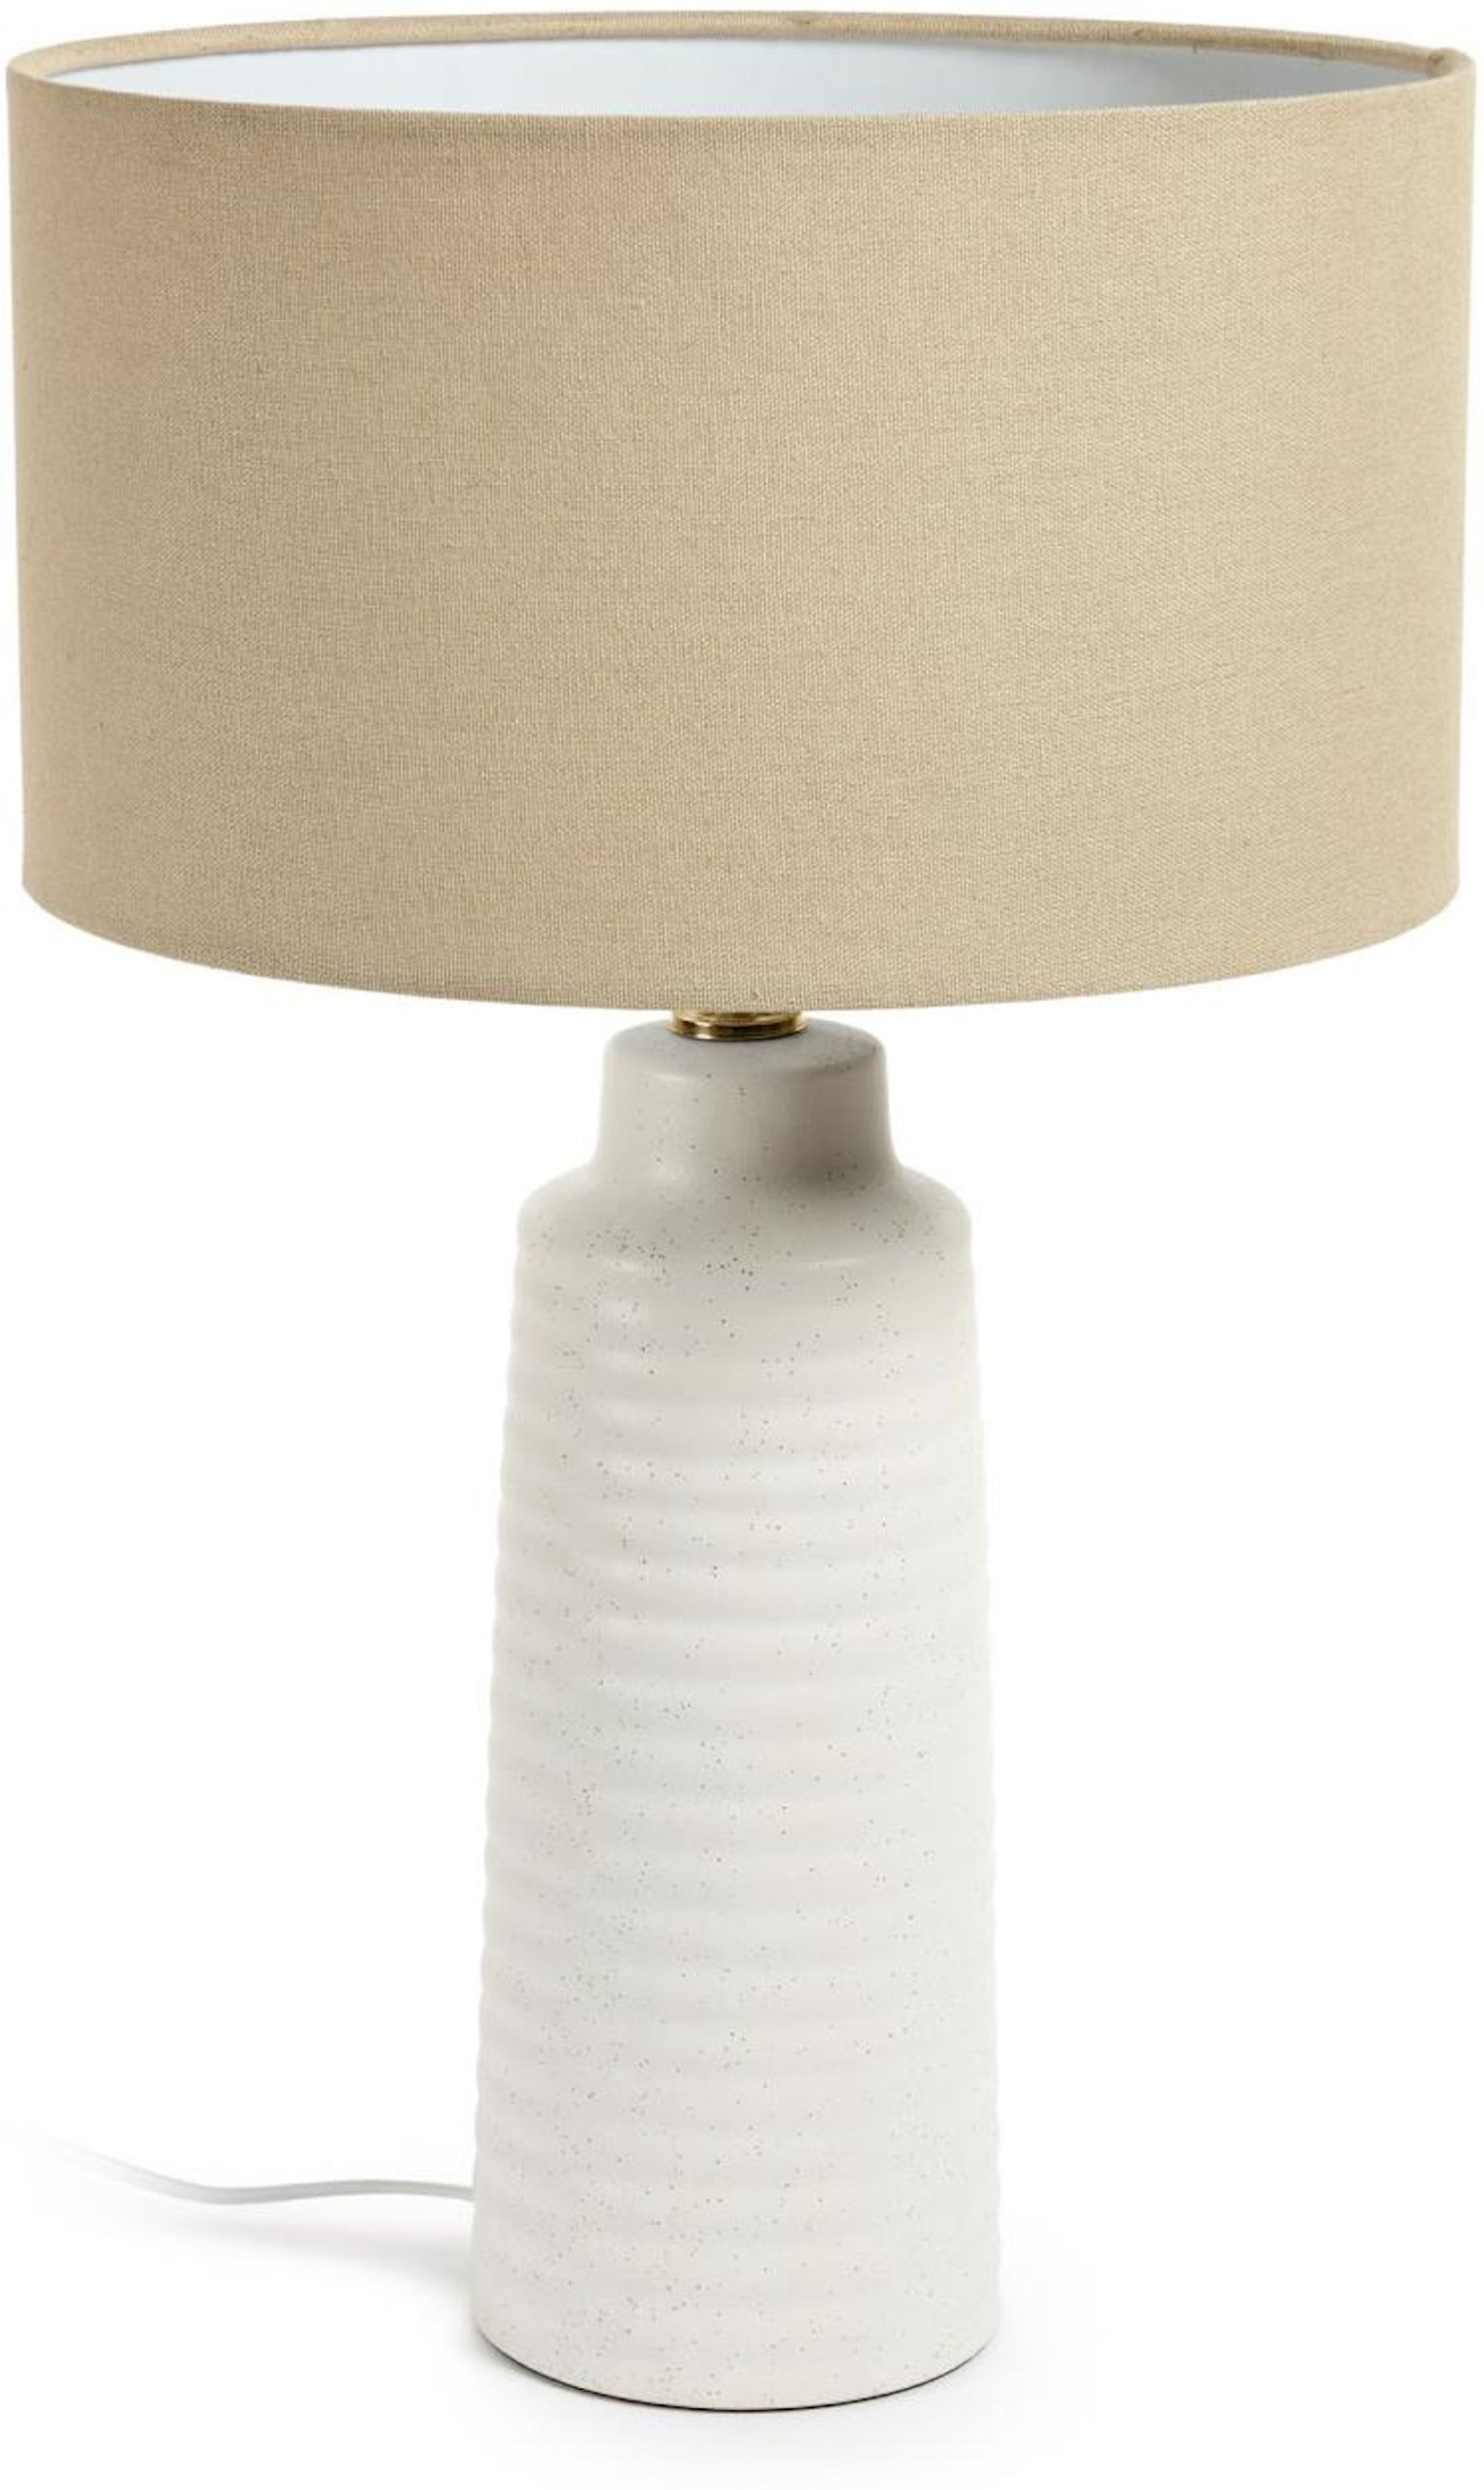 LAFORMA Mijal keramisk bordlampe med hvid finish